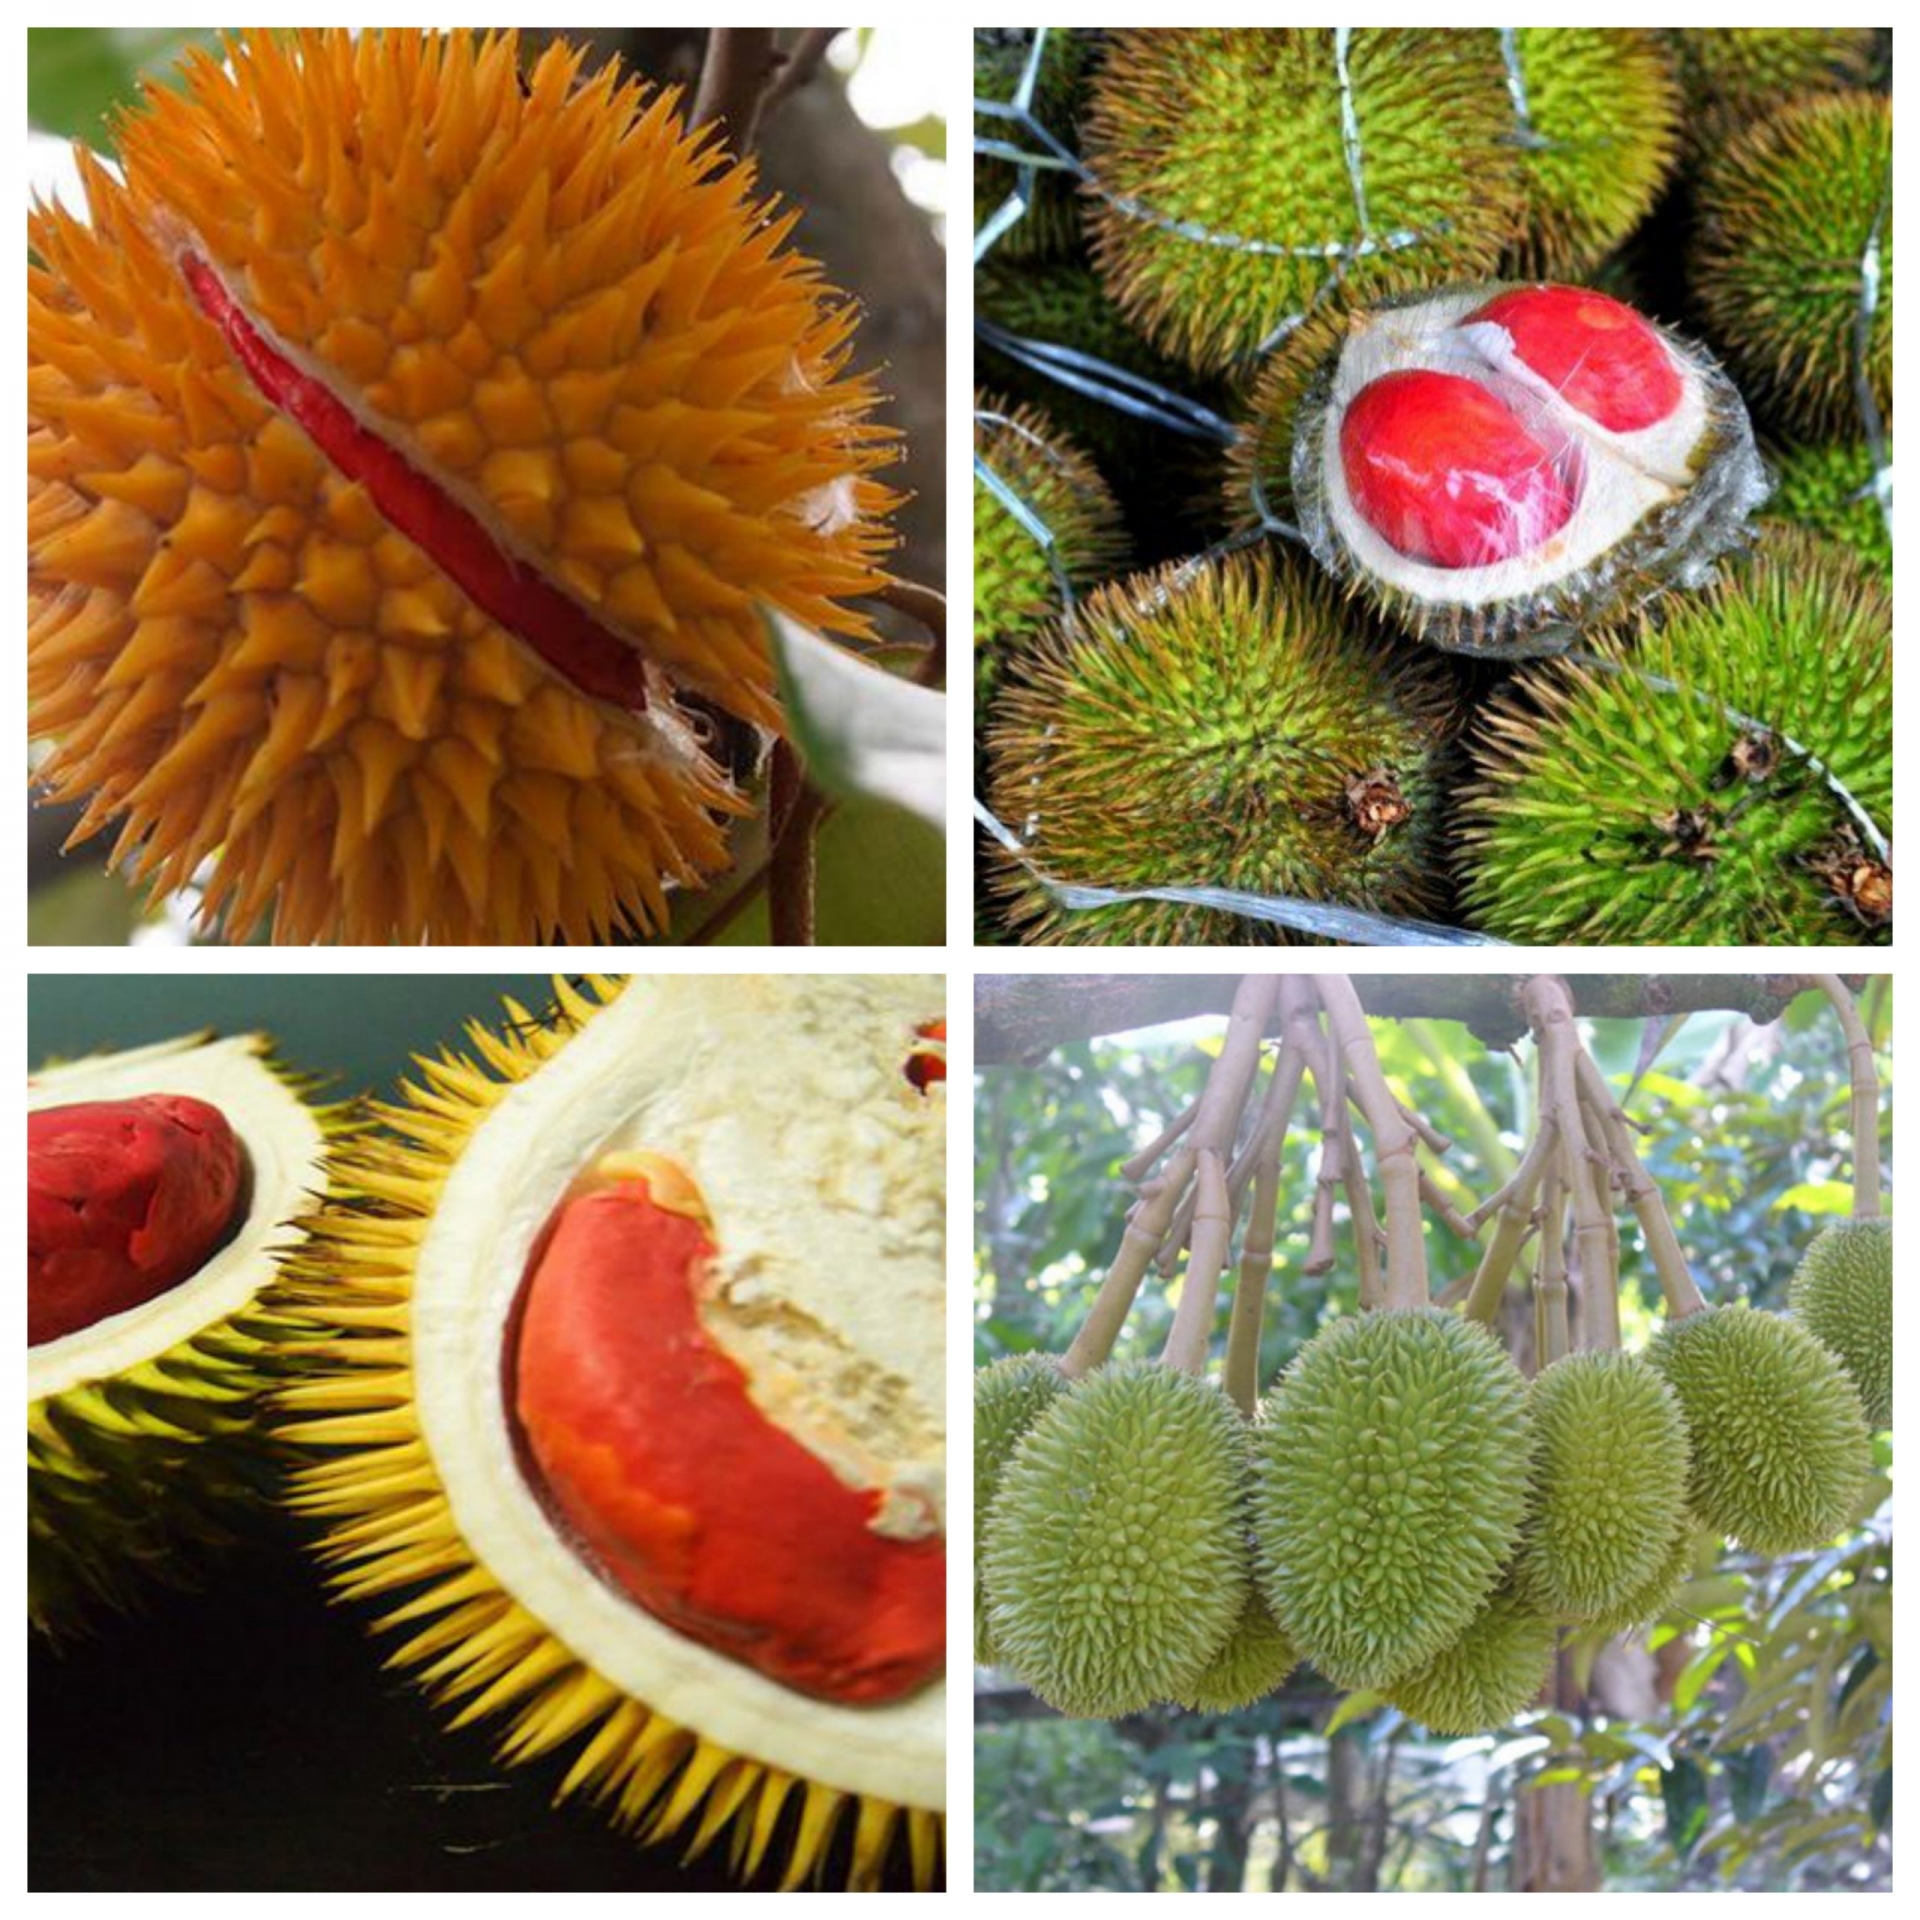 Sầu riêng ruột đỏ là loại quả đặc sản tại bang Sabah – miền Đông Malaysia.